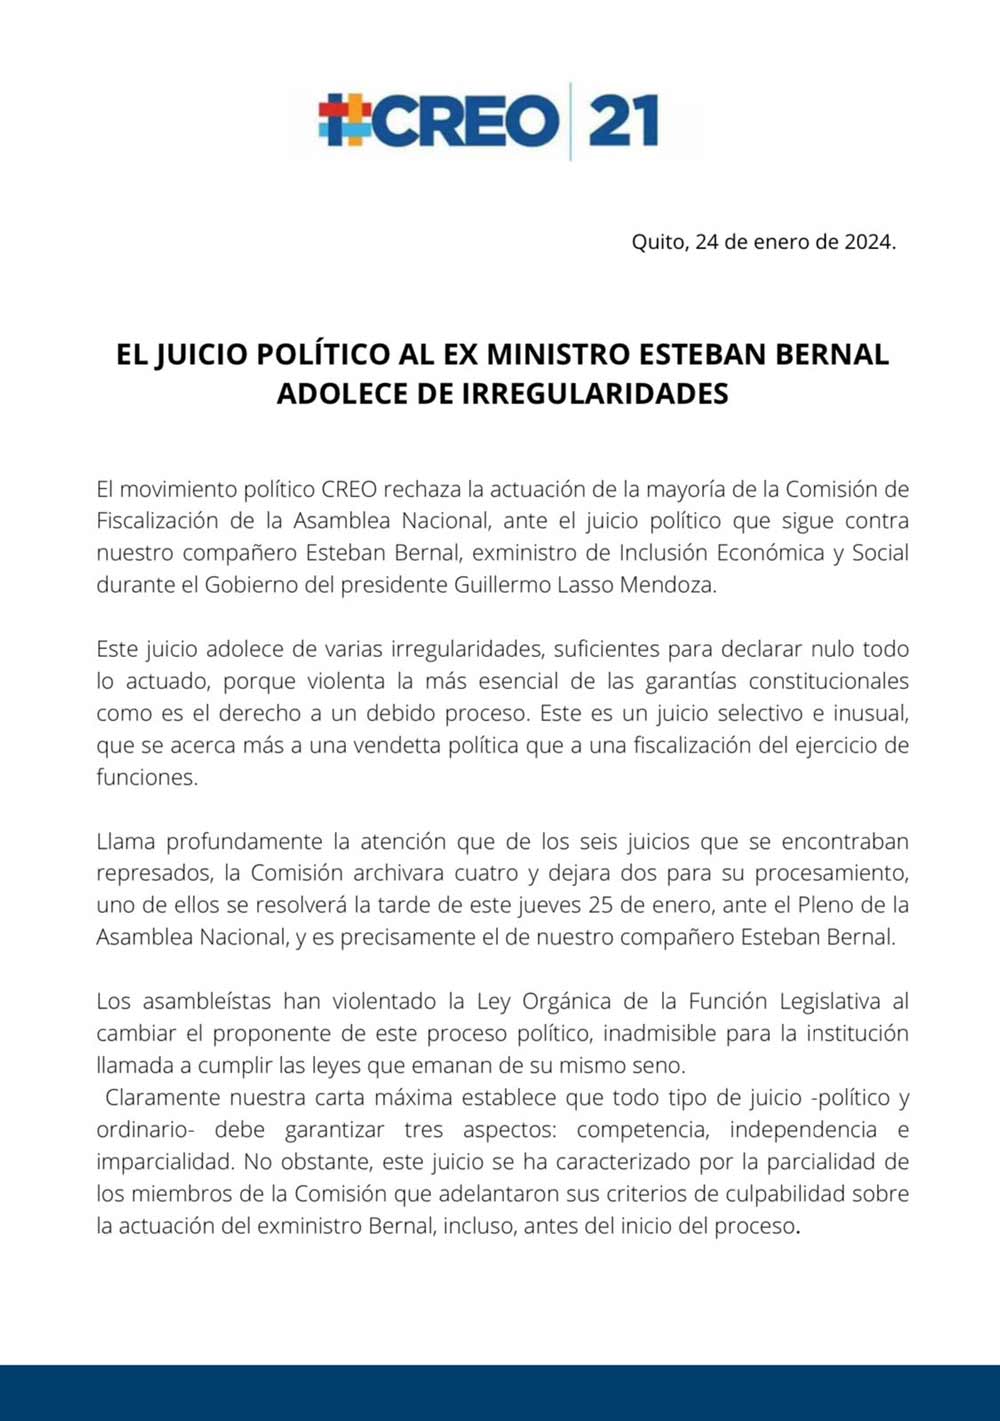 El juicio político al ex ministro Esteban Bernal adolece de irregularidades.